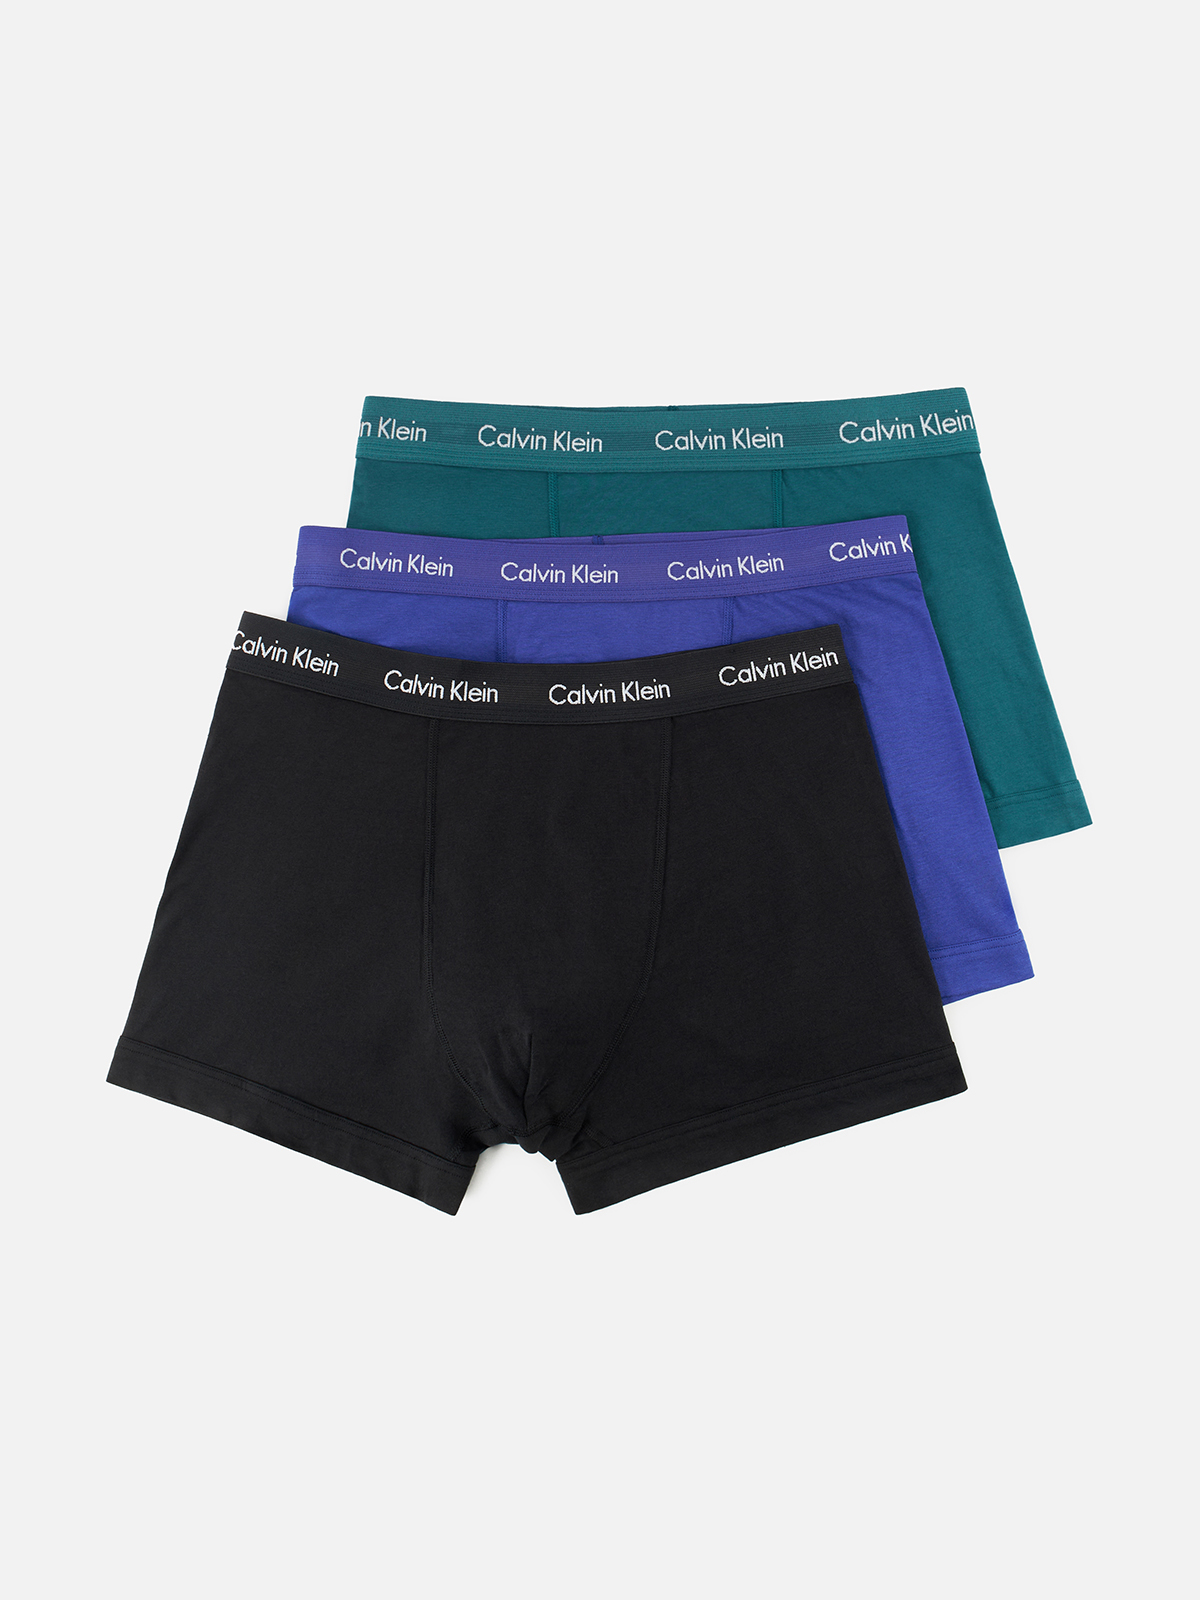 Комплект трусов мужских Calvin Klein Underwear 0000U2662G синих, зеленых, черных S